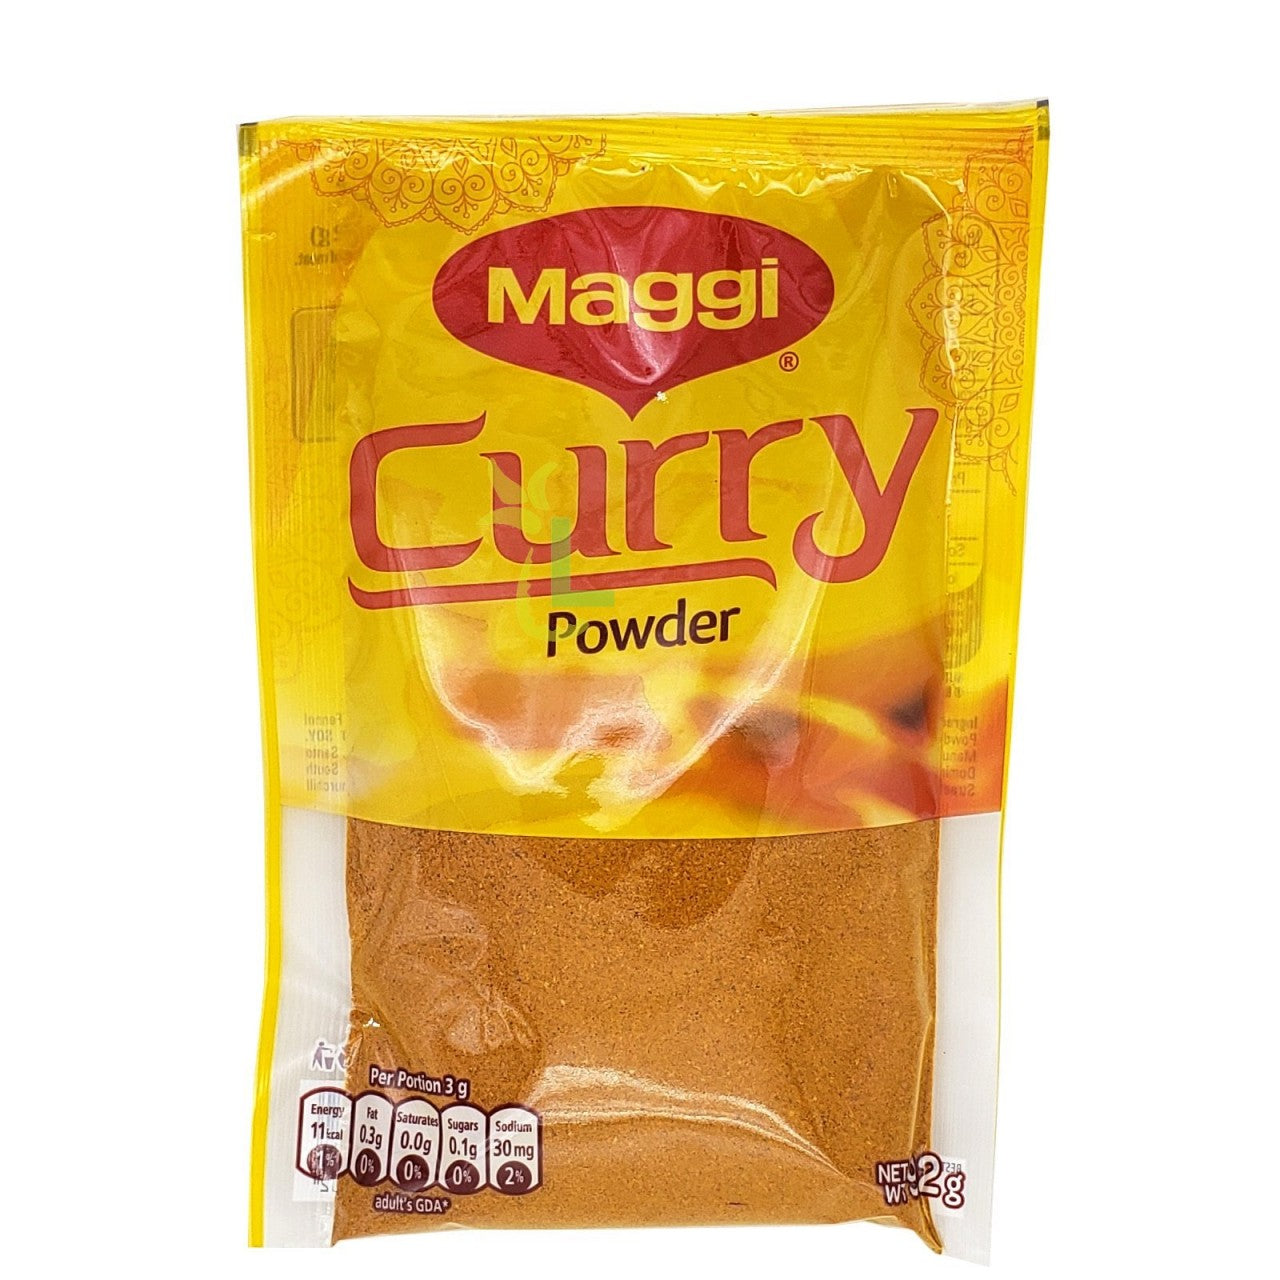 Maggi curry powder